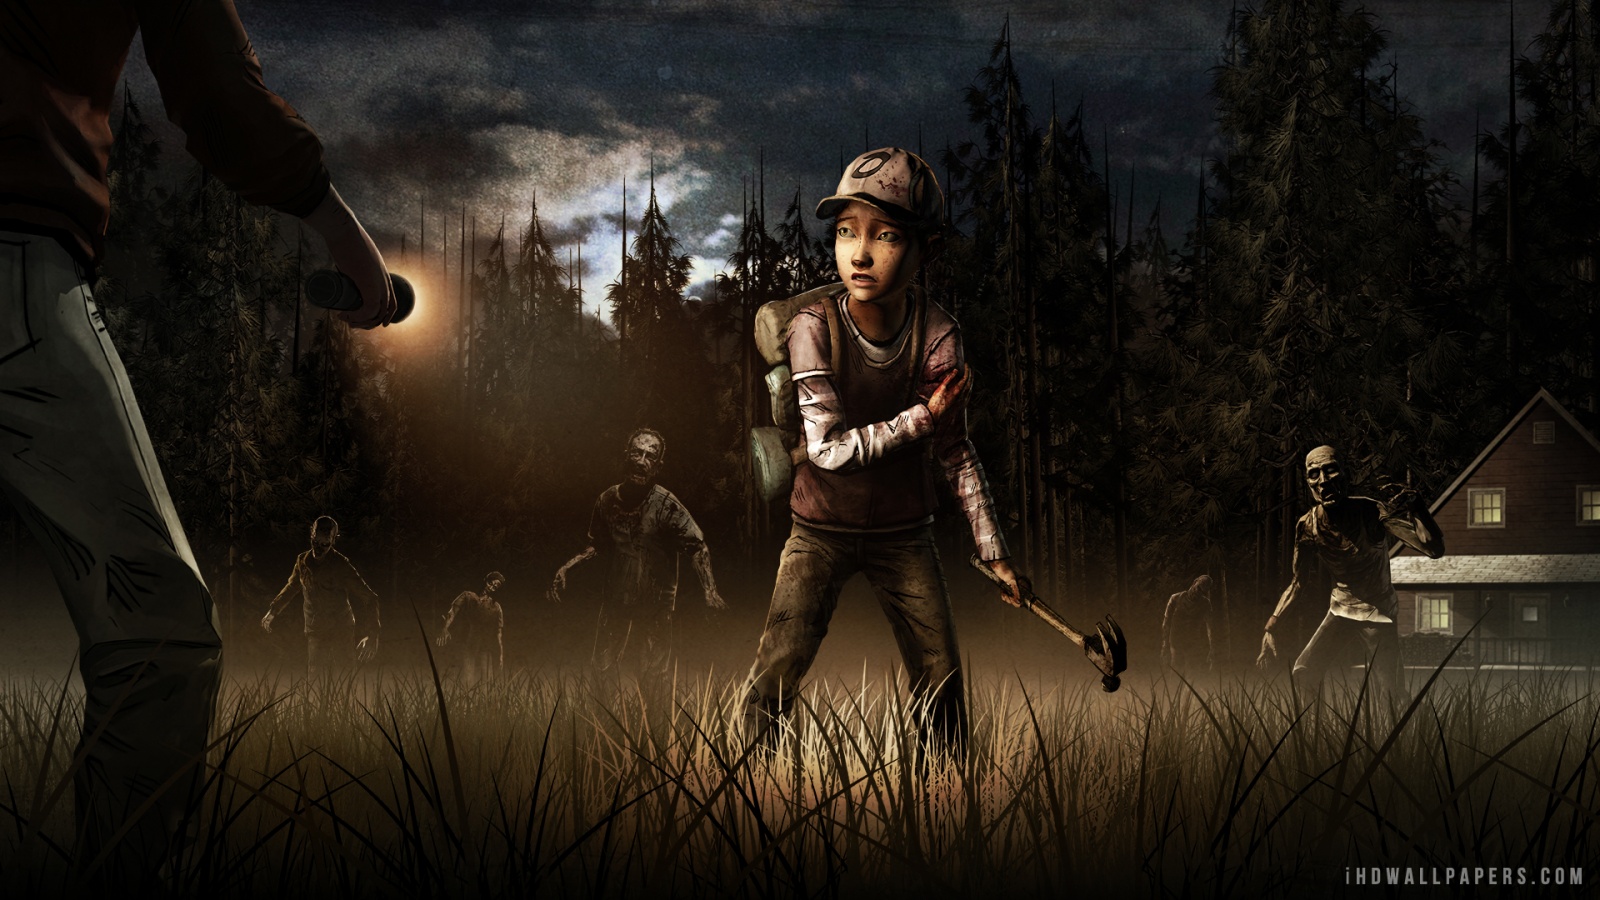 74+] The Walking Dead Game Wallpaper - WallpaperSafari